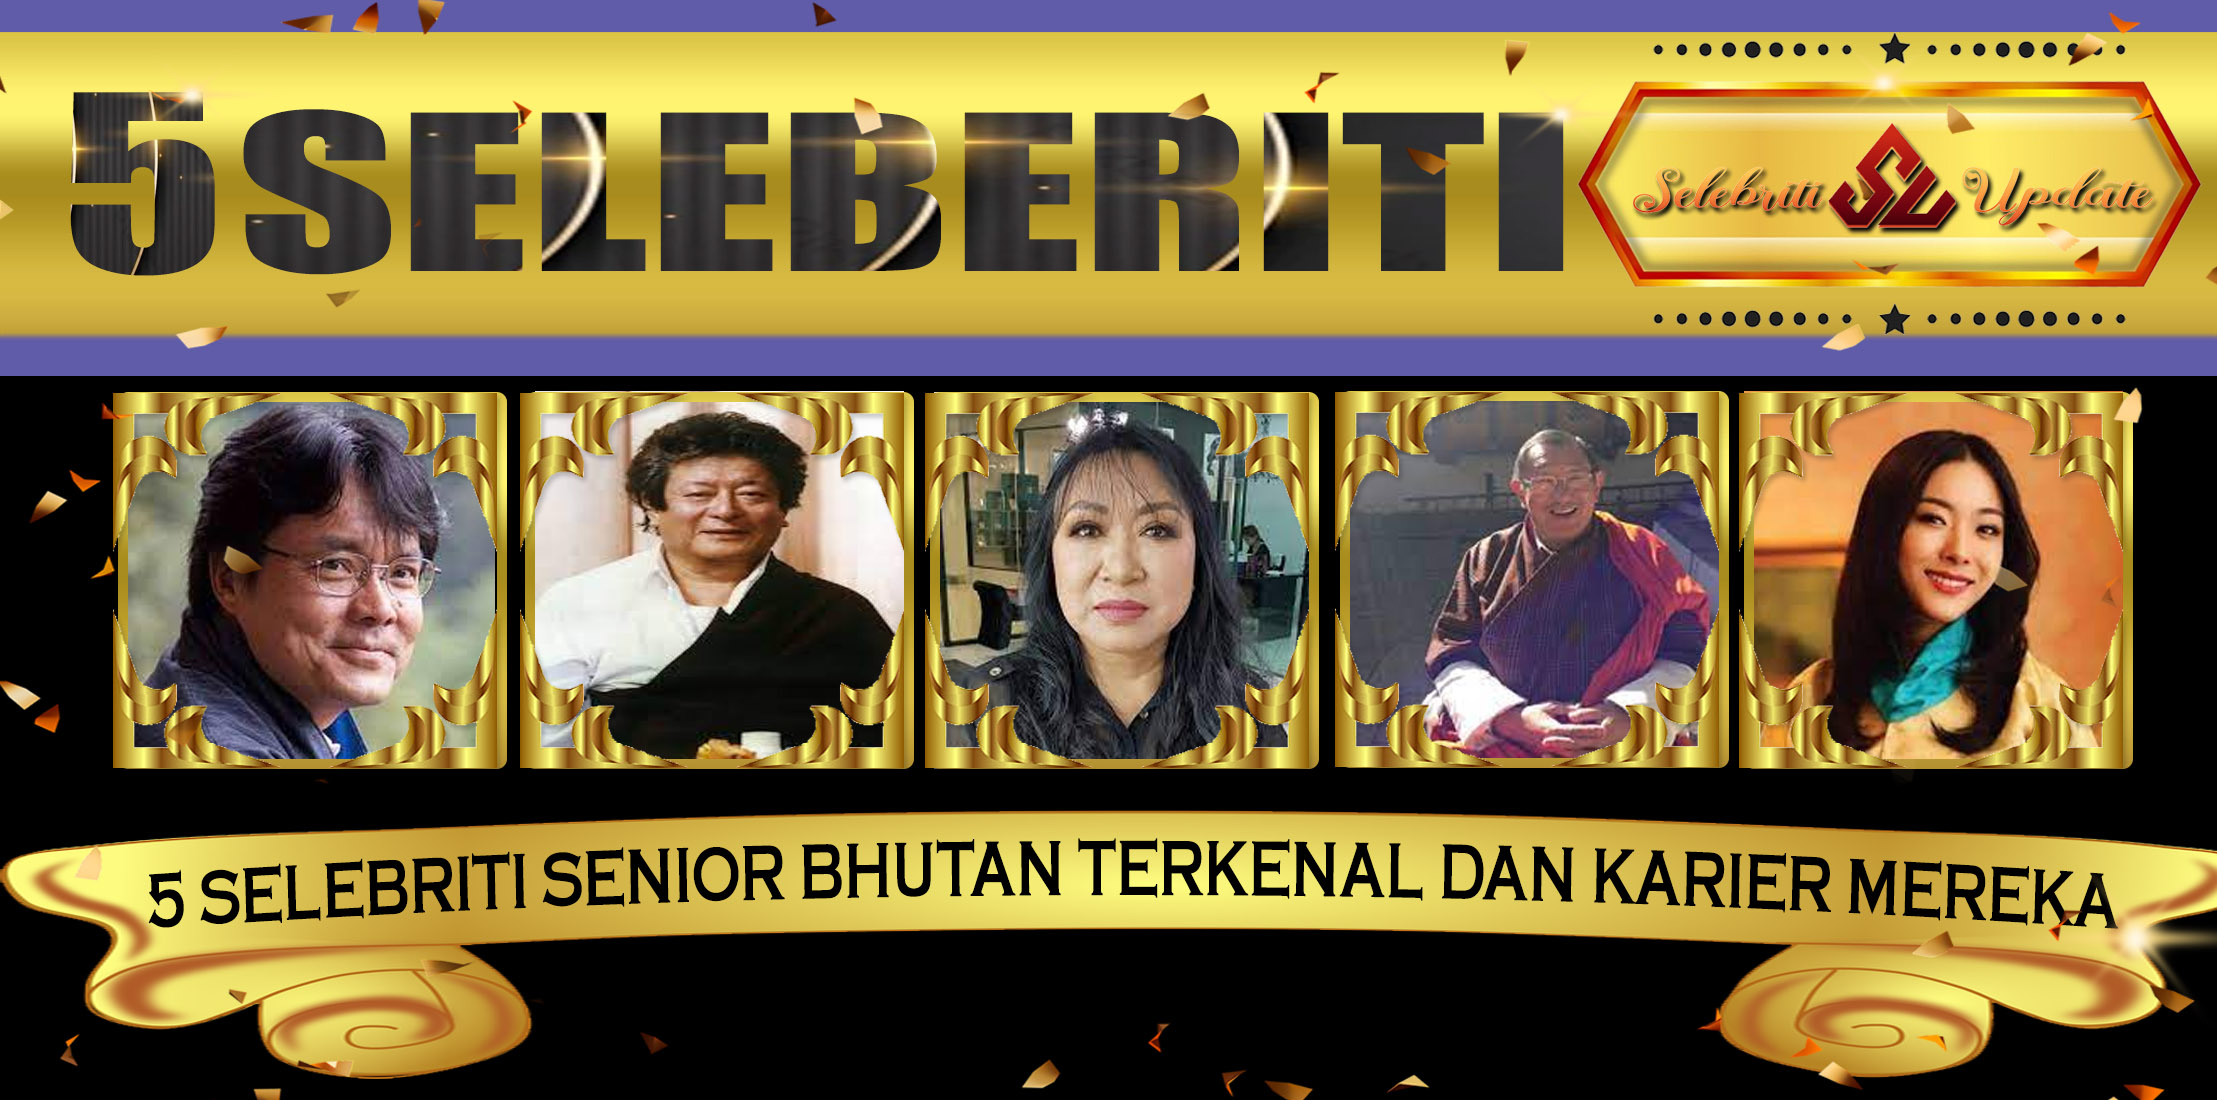 5 Selebriti Senior Bhutan Terkenal dan Karier Mereka